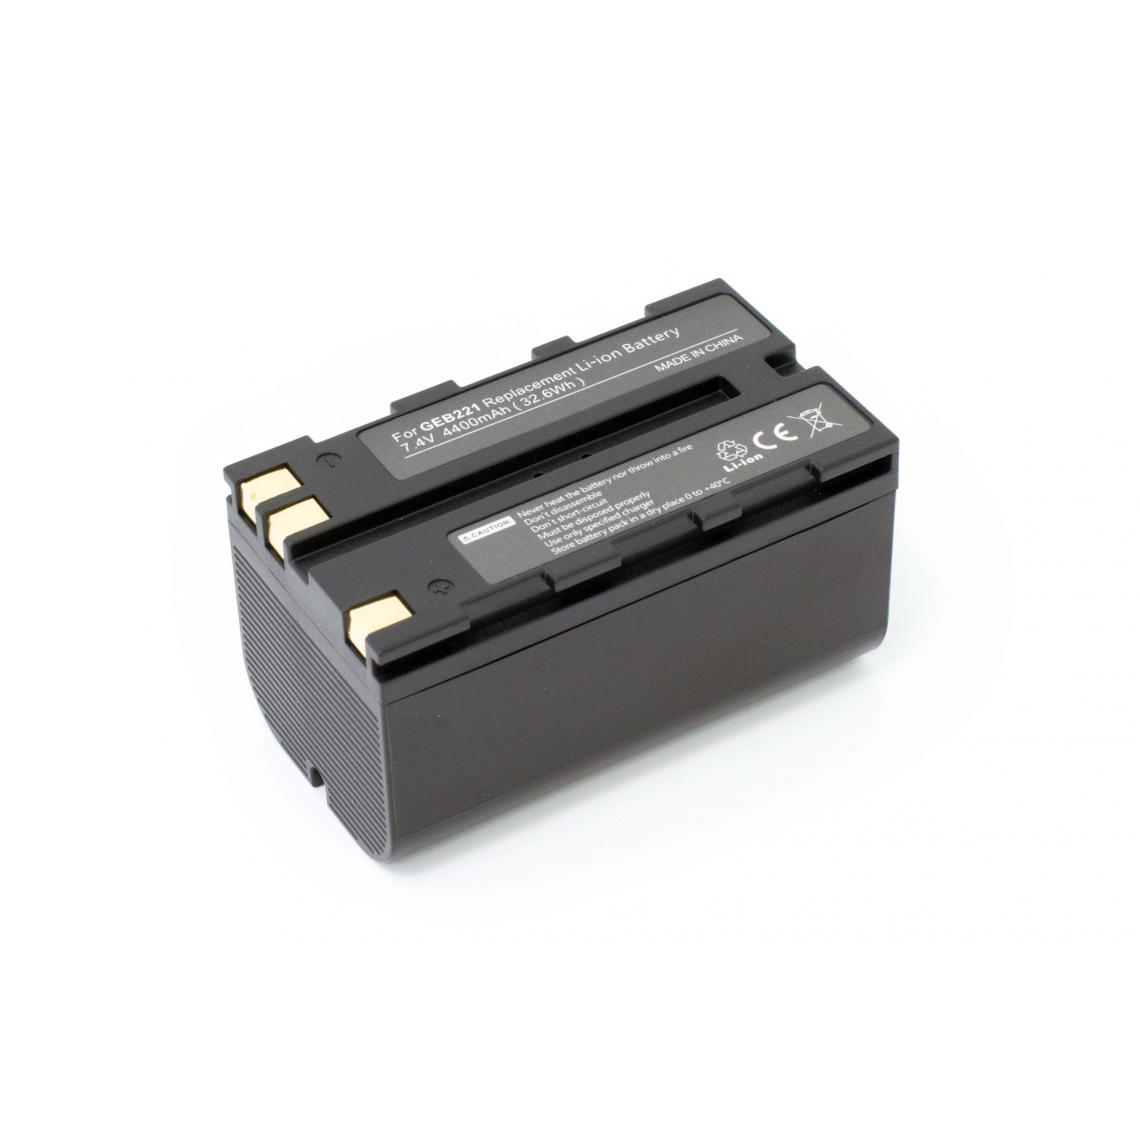 Vhbw - vhbw Batterie compatible avec Leica TCR802 Power, TCR803 Power dispositif de mesure laser, outil de mesure (4400mAh, 7,4V, Li-ion) - Piles rechargeables